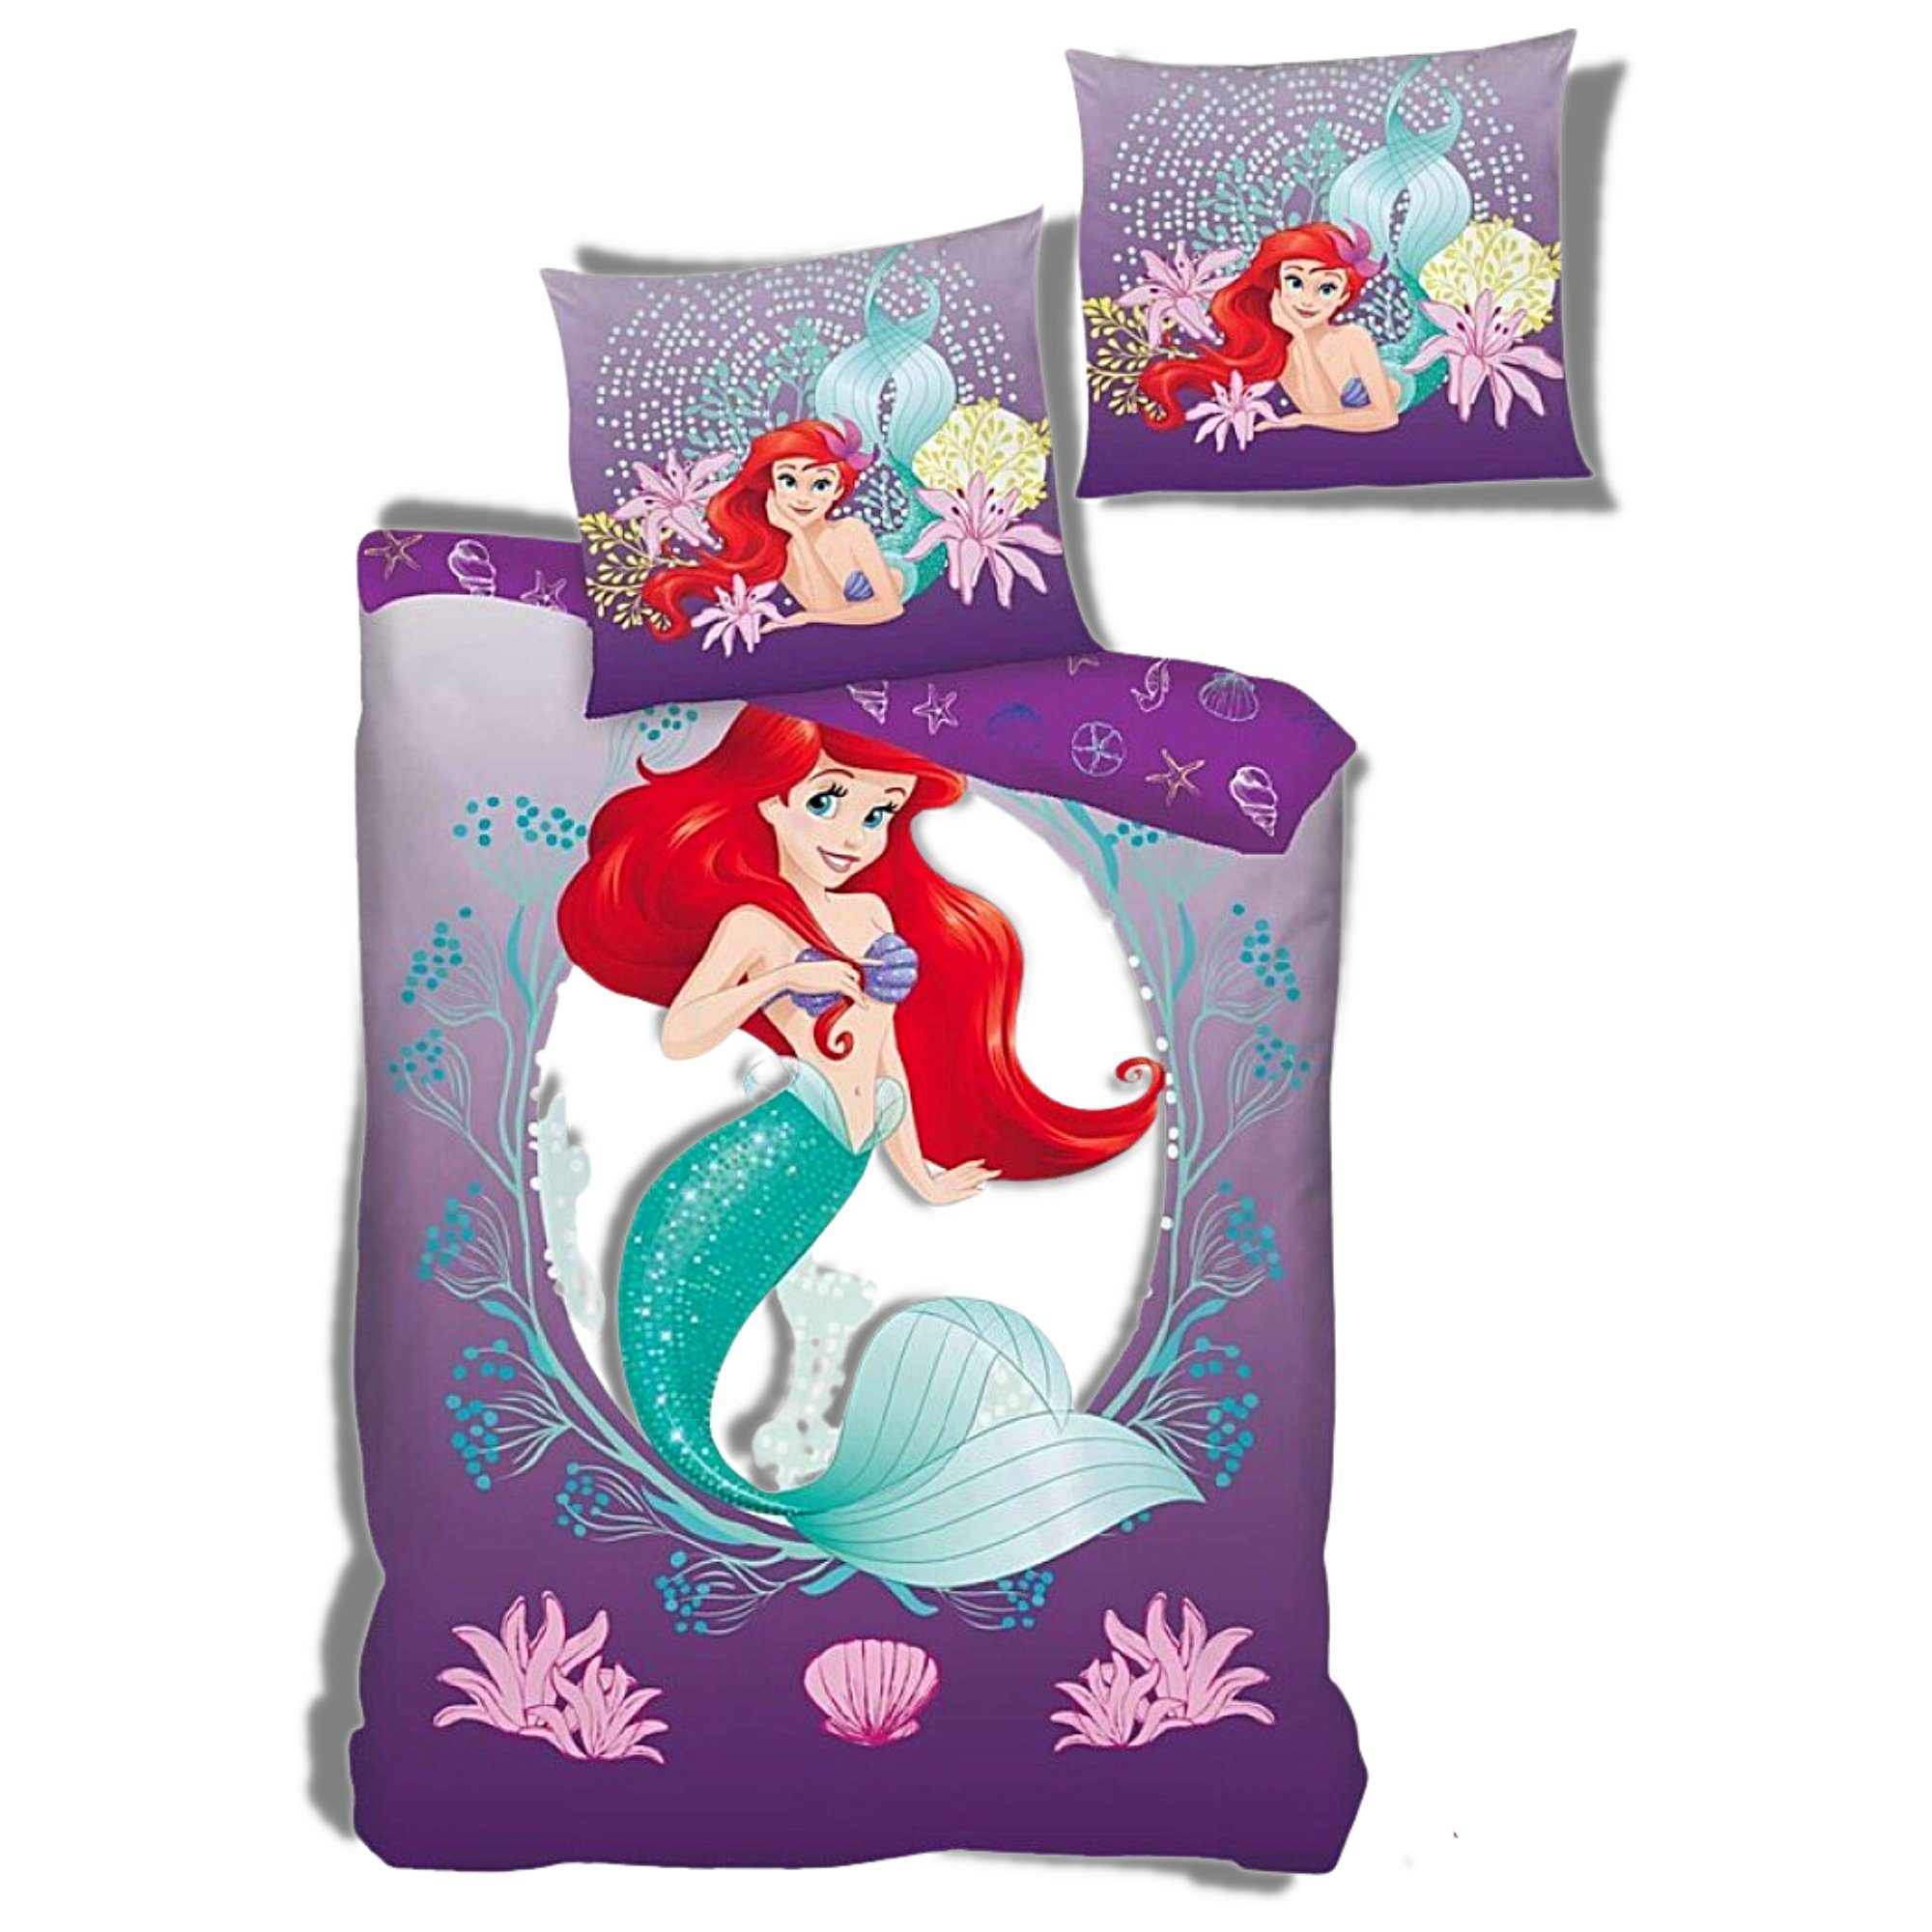 Kinderbettwäsche »Arielle die Meerjungfrau«, Disney Princess, Mädchen  Bettwäsche 135-140 x 200 cm online kaufen | OTTO